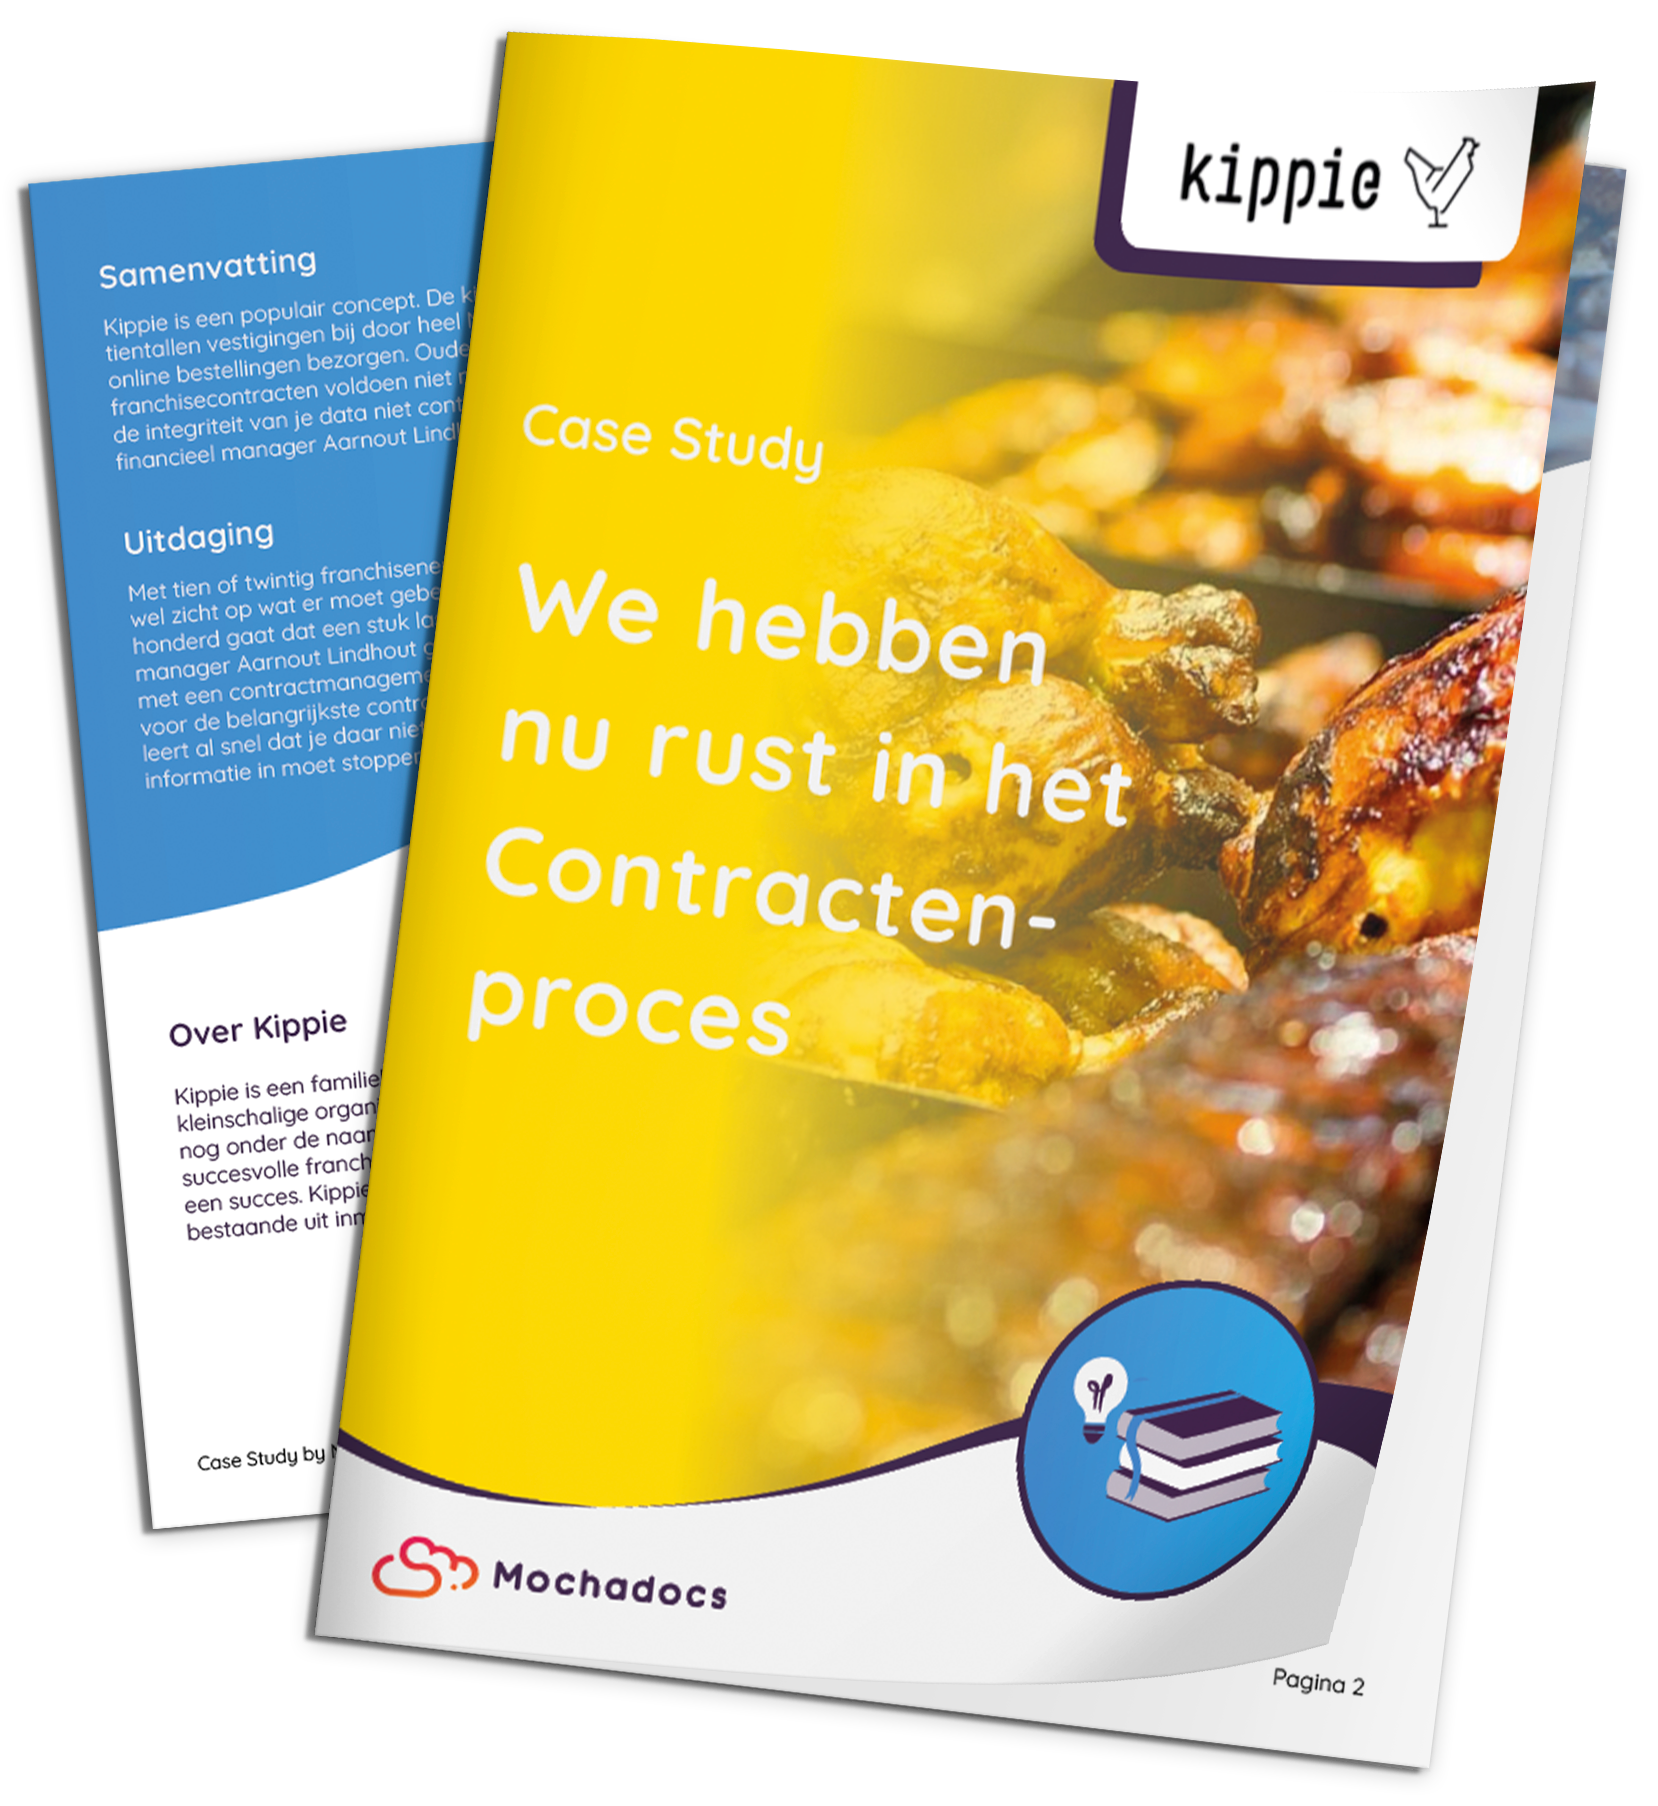 Mochadocs - Contract Management - Case Study - Kippie - We hebben nu rust in het Contracten-proces